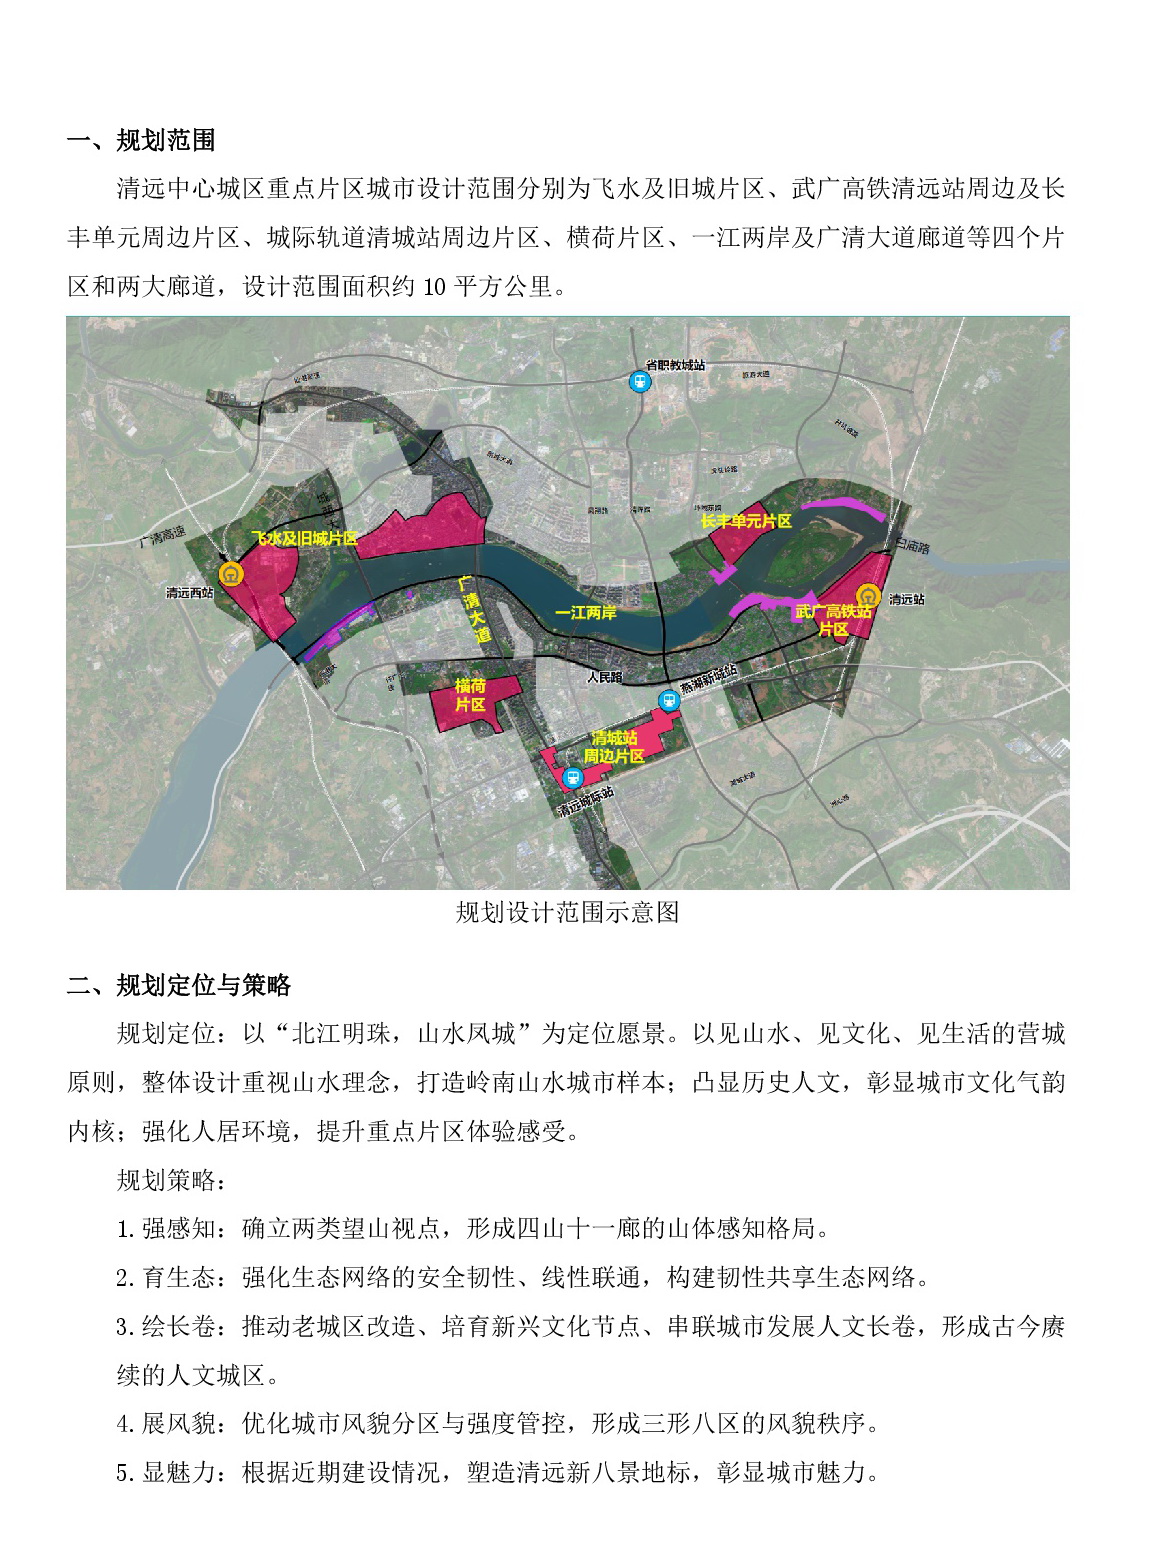 《清远中心城区重点片区城市设计及控制性详细规划》（城市设计部分）草案公示_网站-002.jpg